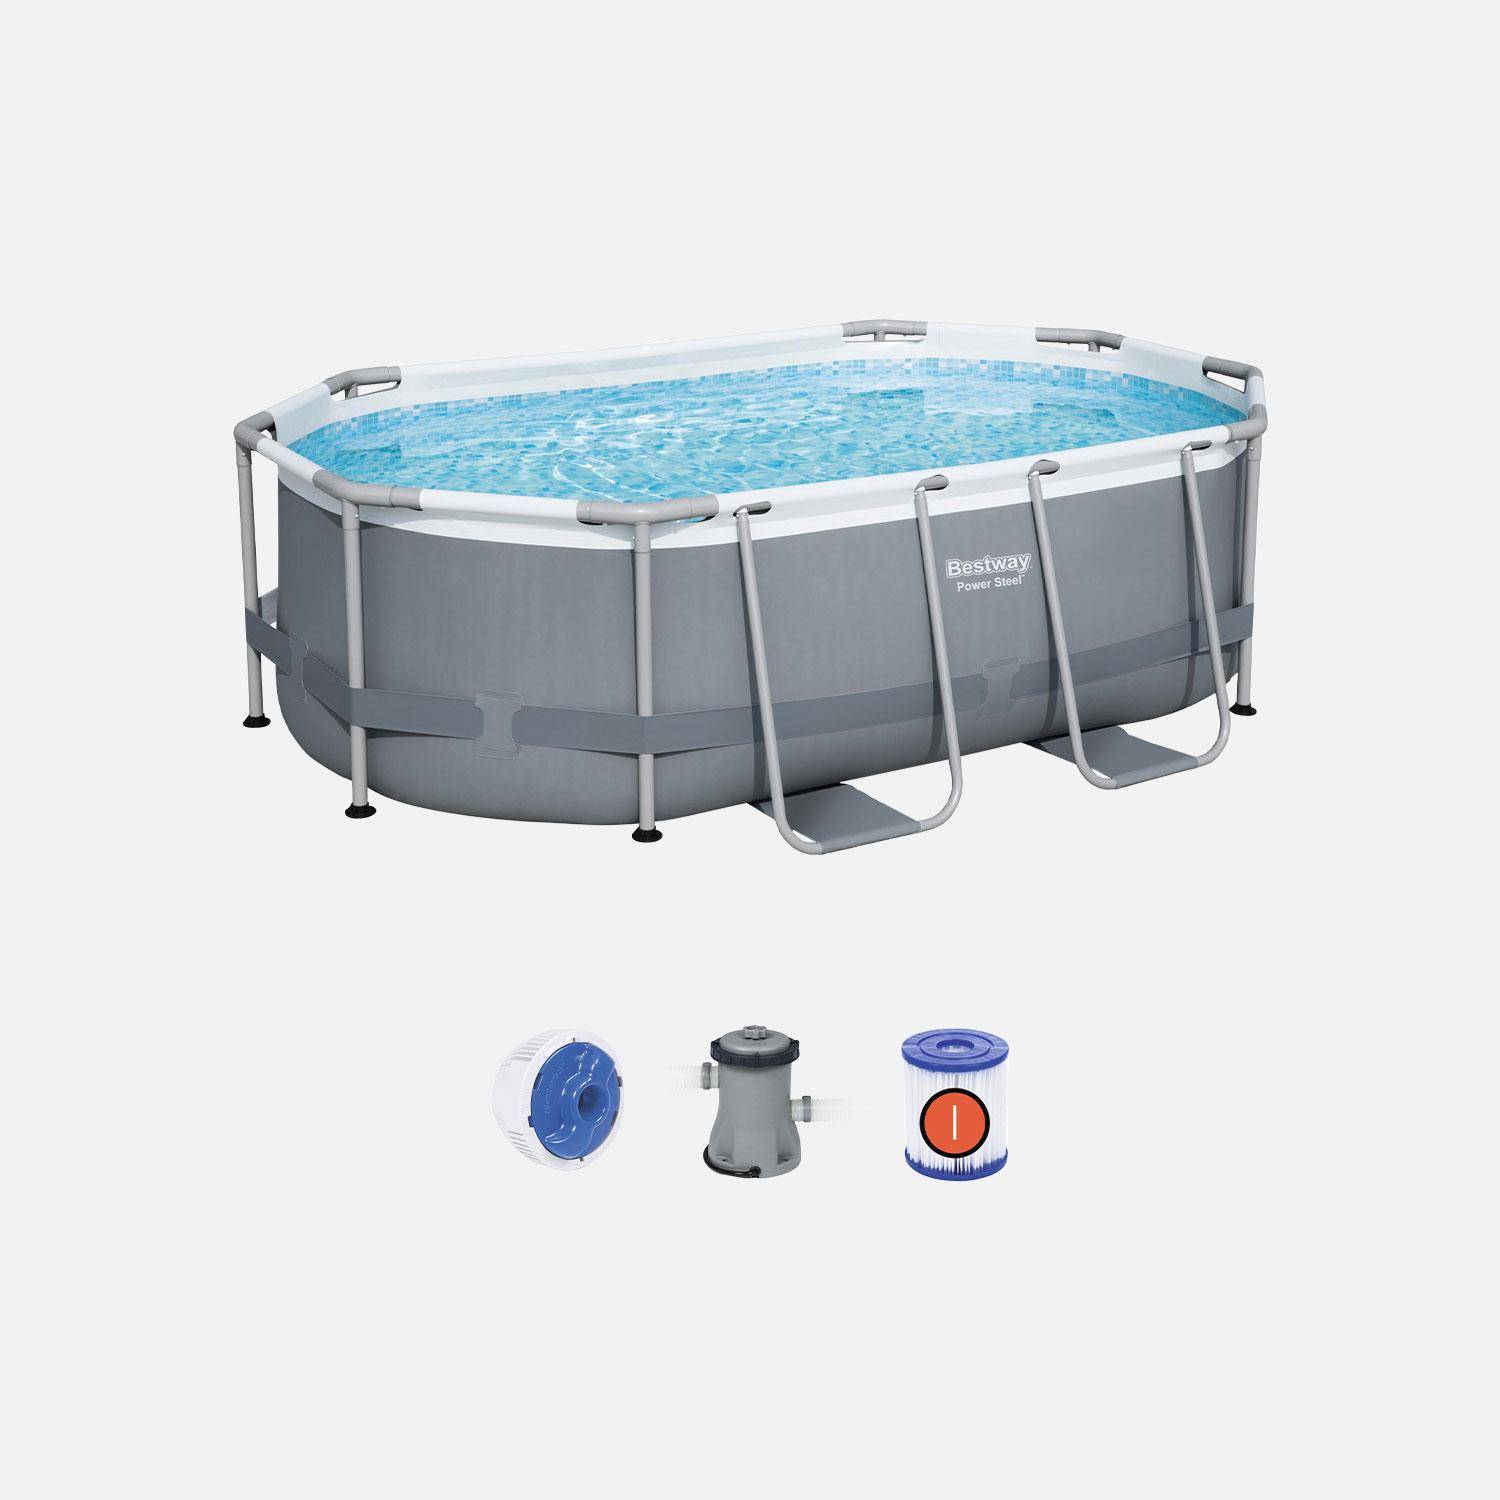 Kit completo de piscina BESTWAY - Spinelle grey - piscina tubular oval 3x2 m, bomba de filtração e kit de reparação incluídos  Photo1